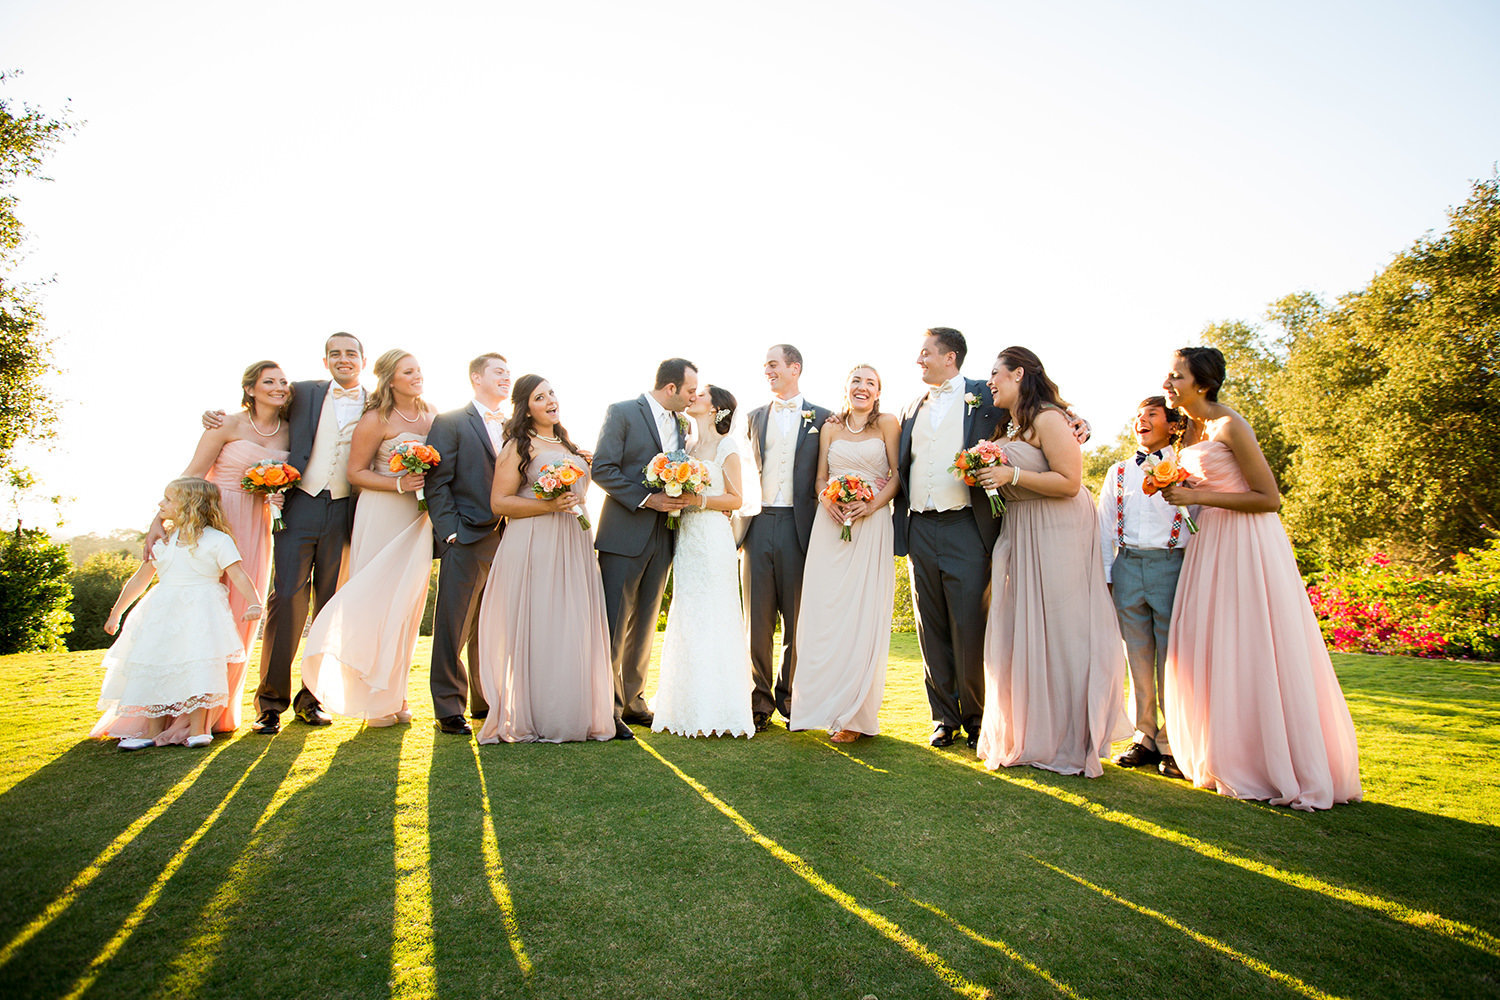 Top 10 wedding party photos